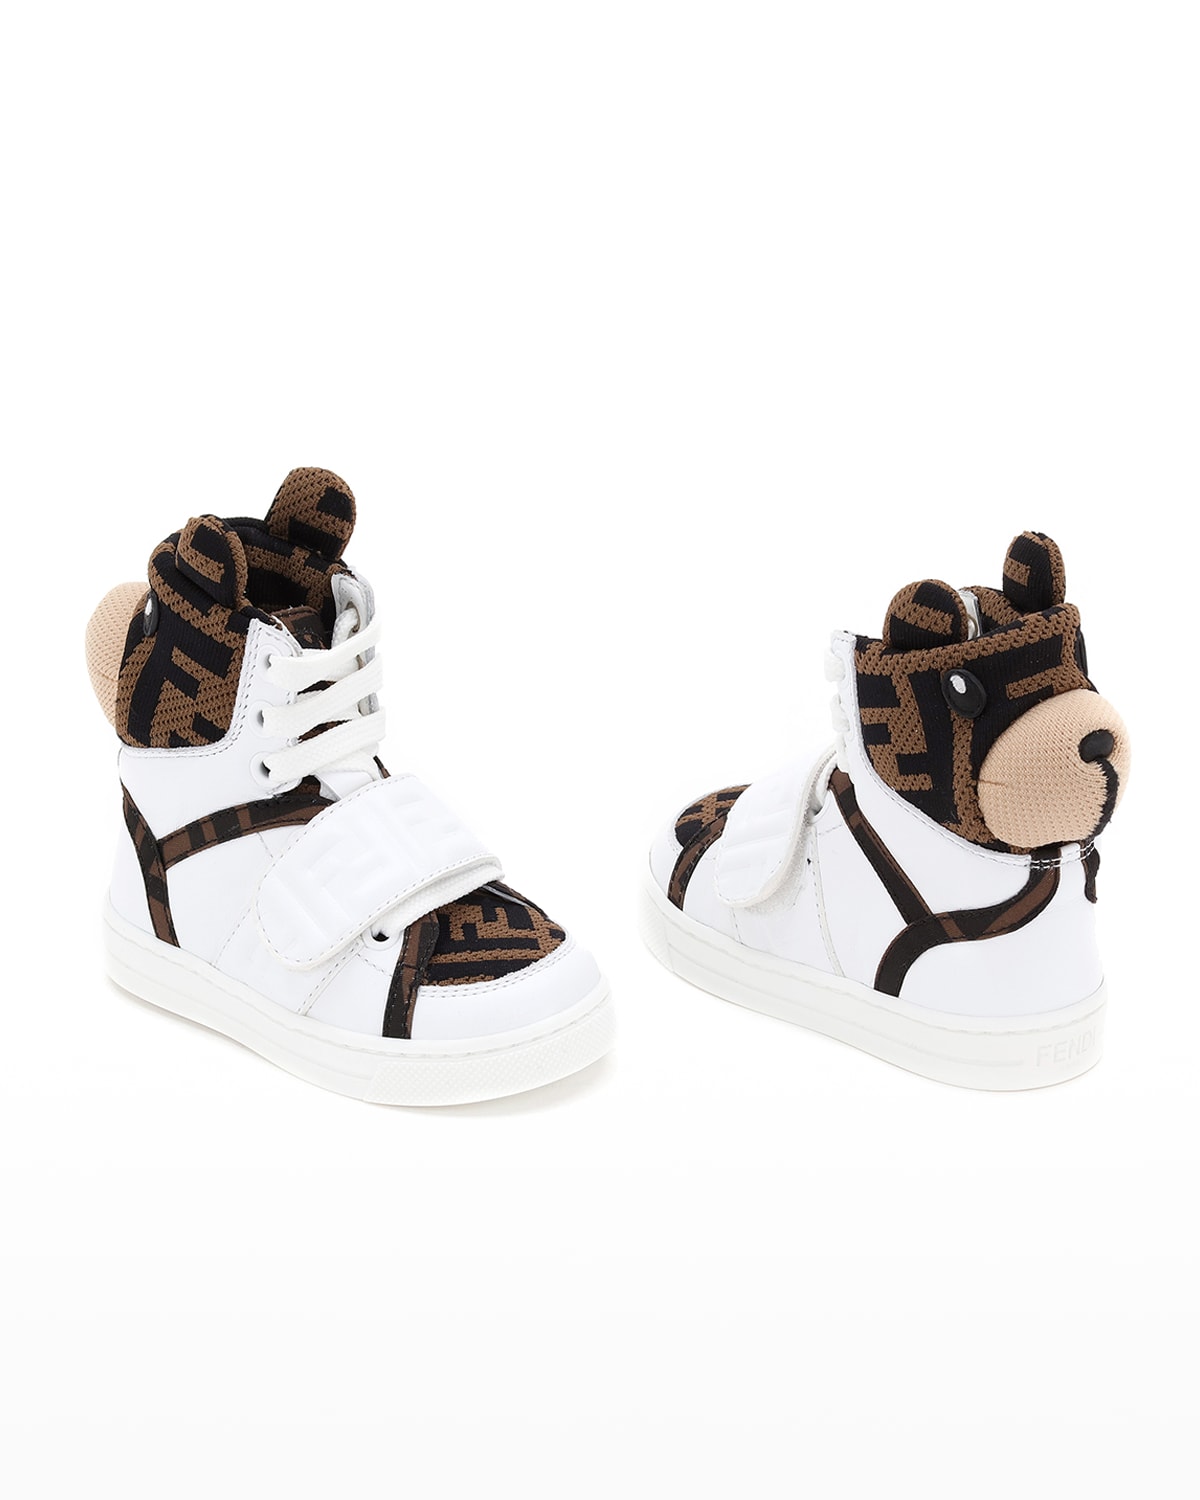 Fendi Sneaker | Neiman Marcus